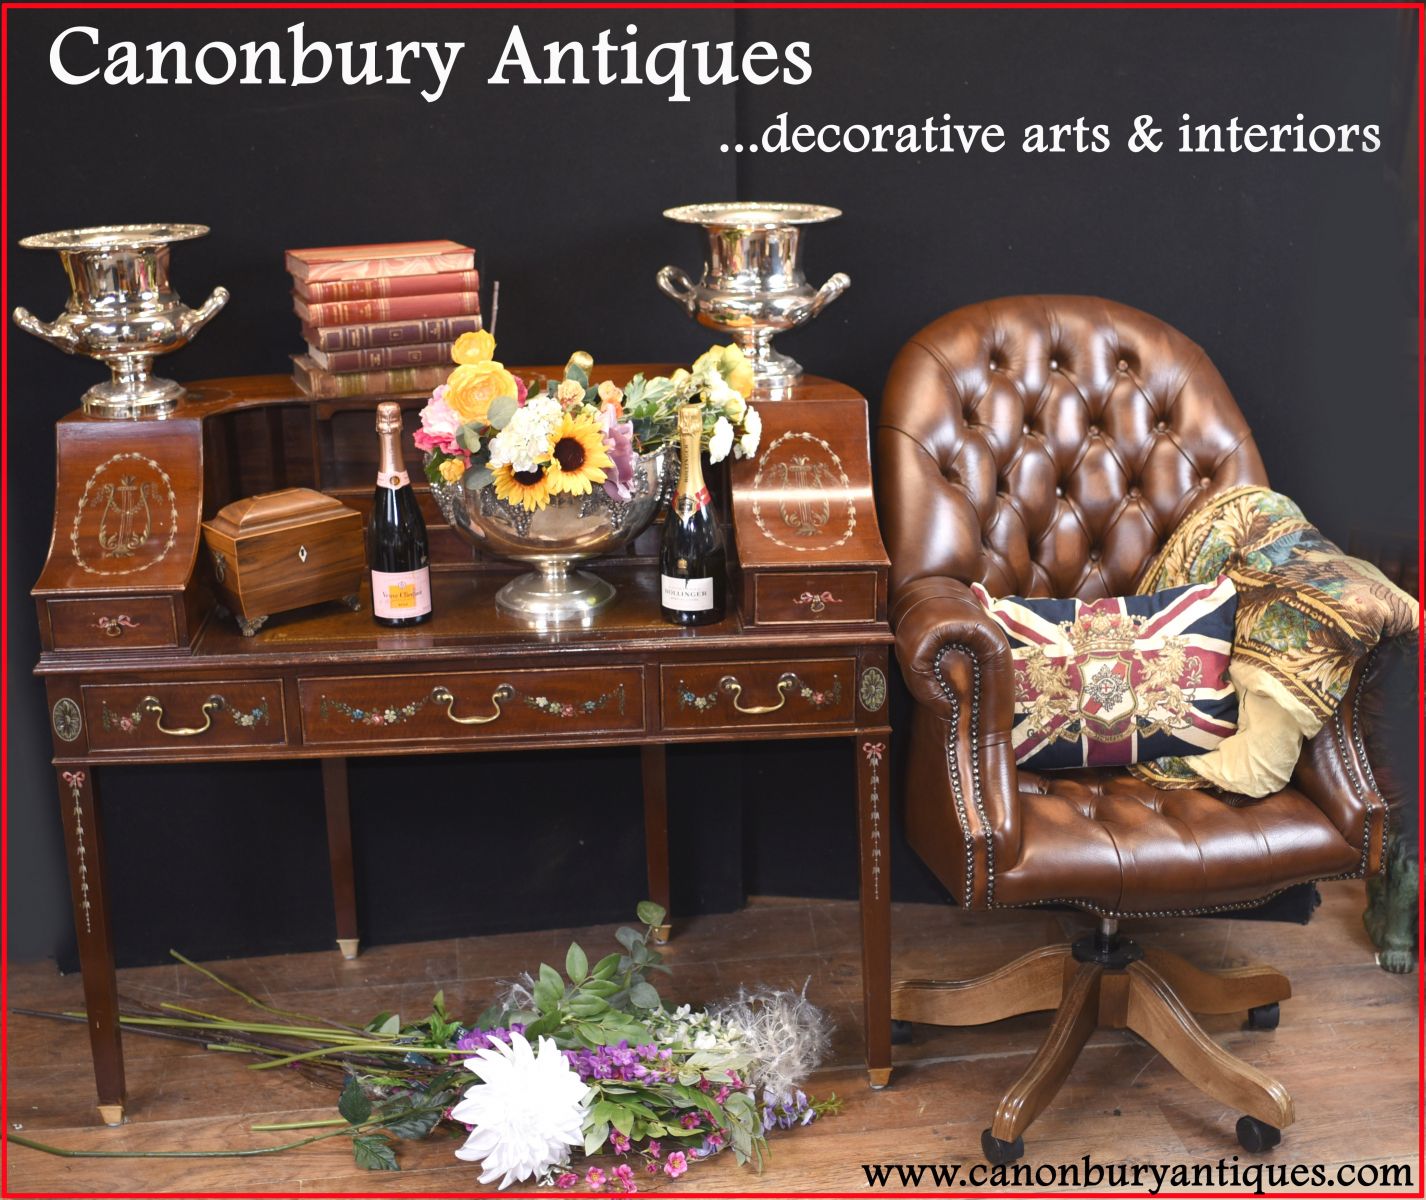 Canonbury Antiques - shop our Latest Acquisitions